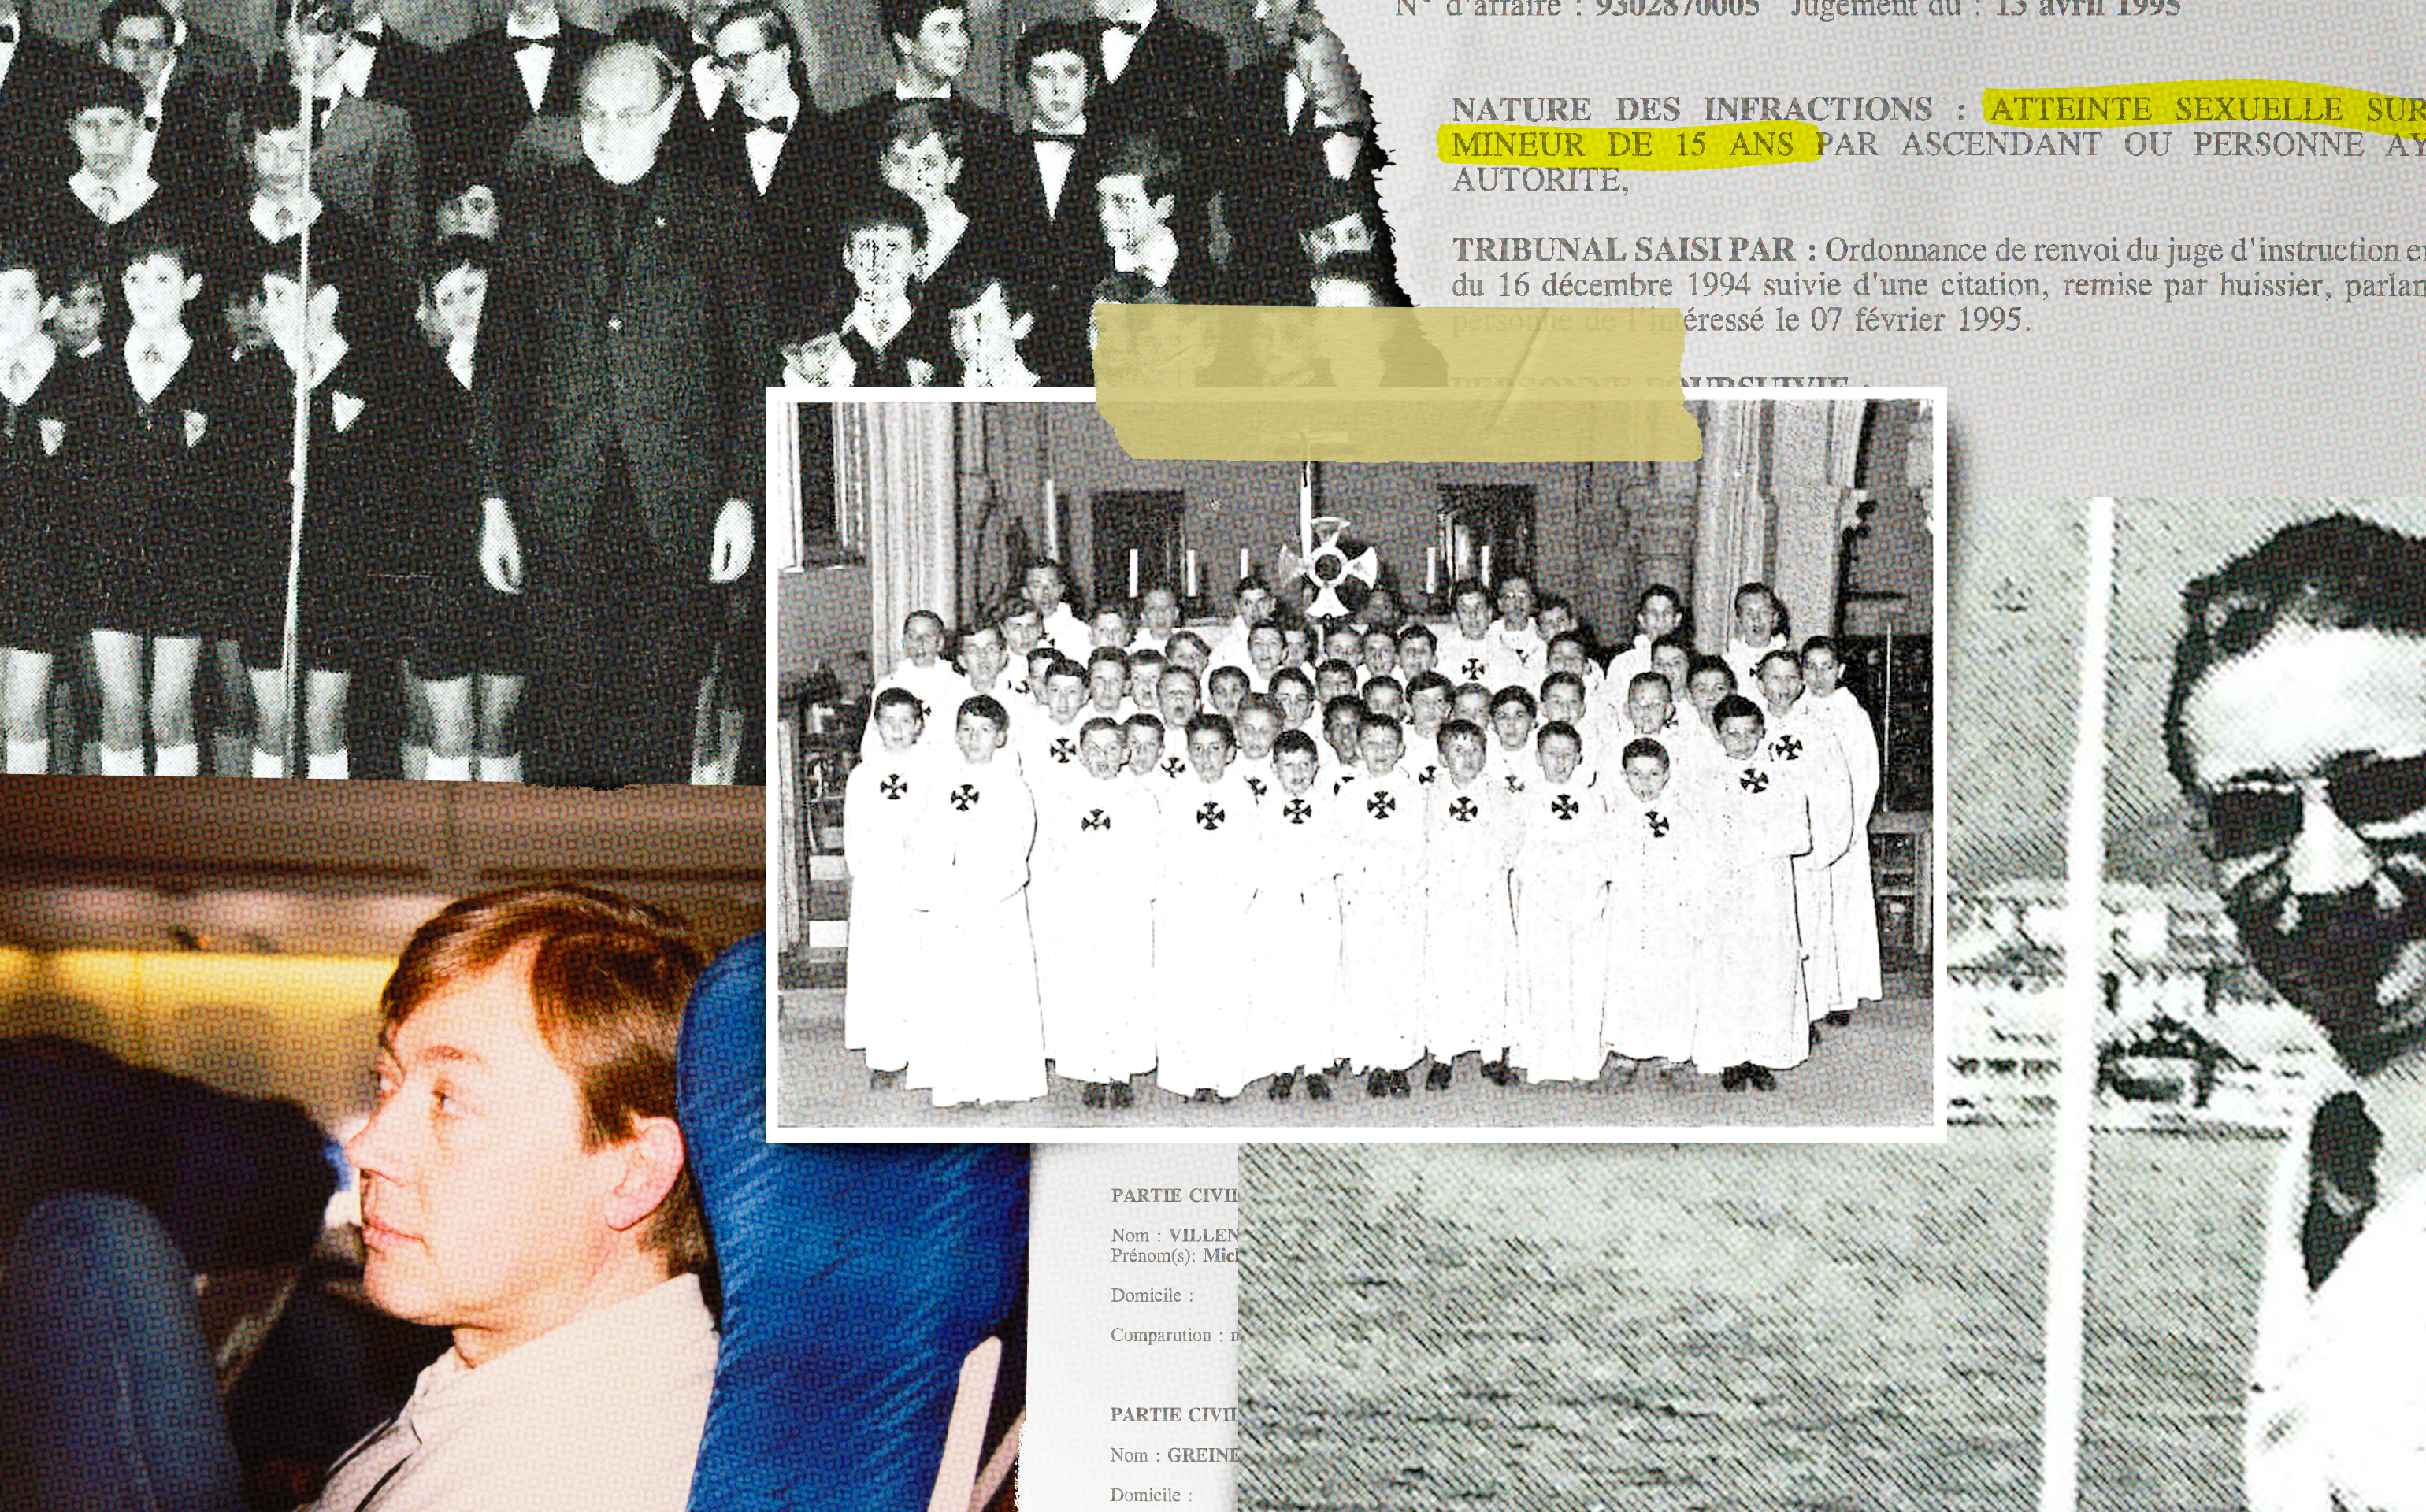 La chorale des Moineaux a été fondée en 1953 à Nogent-sur-Marne (Val-de-Marne). Pendant plus de cinquante ans, des actes pédophiles et des viols ont été perpétrés au sein de cette association. LP/Photomontage/Illustration PAM/Documents LP/DR